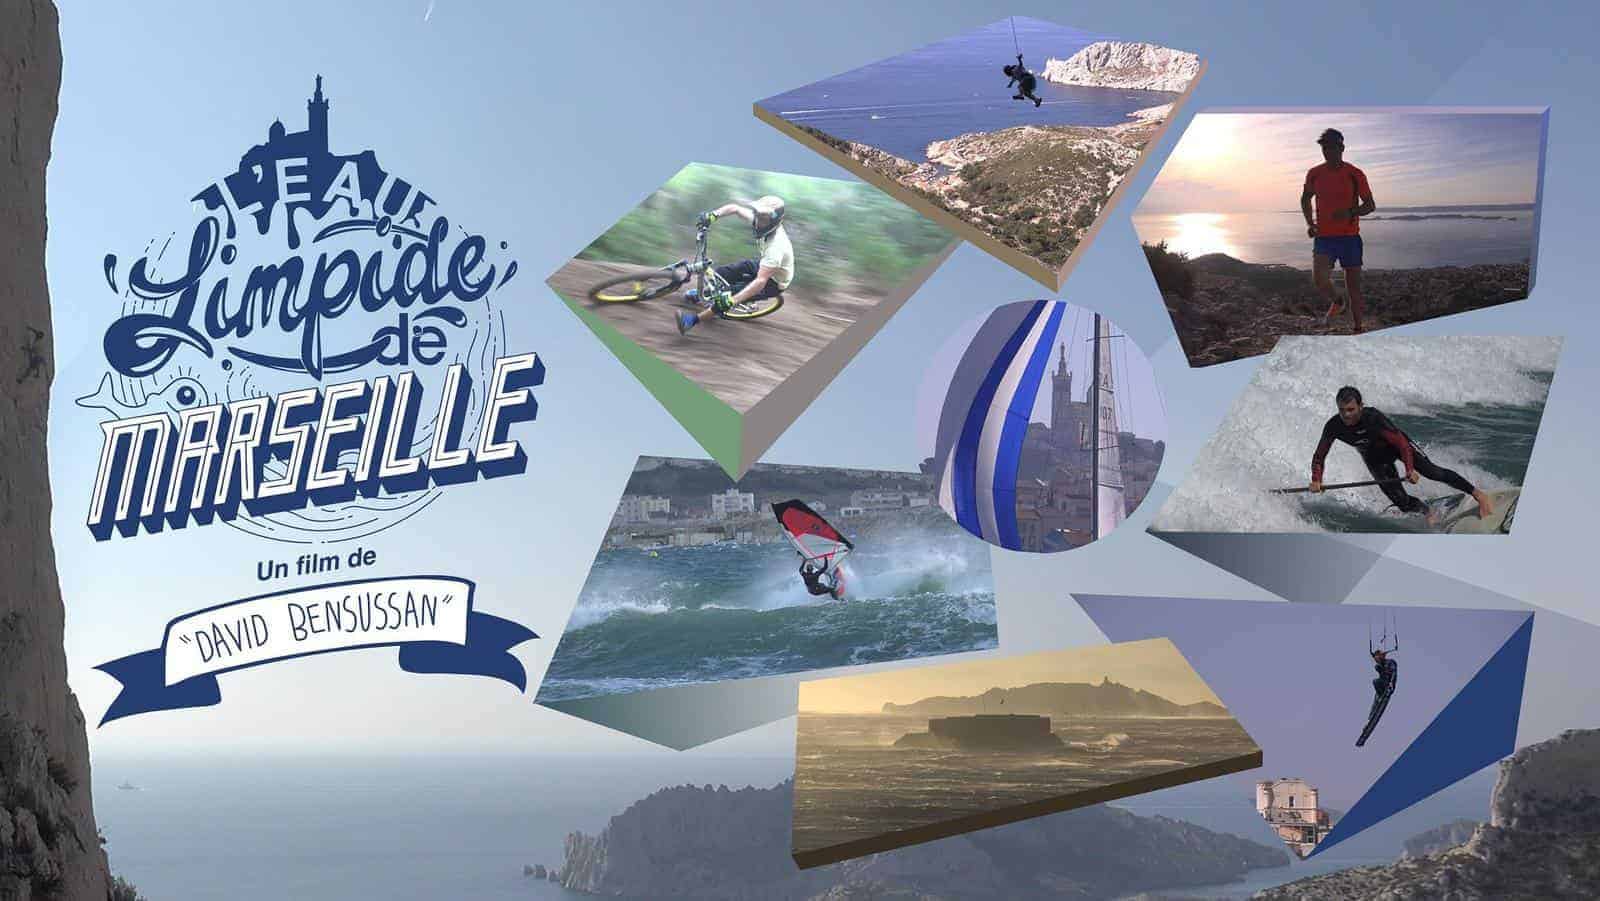 , Vidéo &#8211; Prenez le temps de découvrir &#8220;L’Eau Limpide de Marseille&#8221;, Made in Marseille